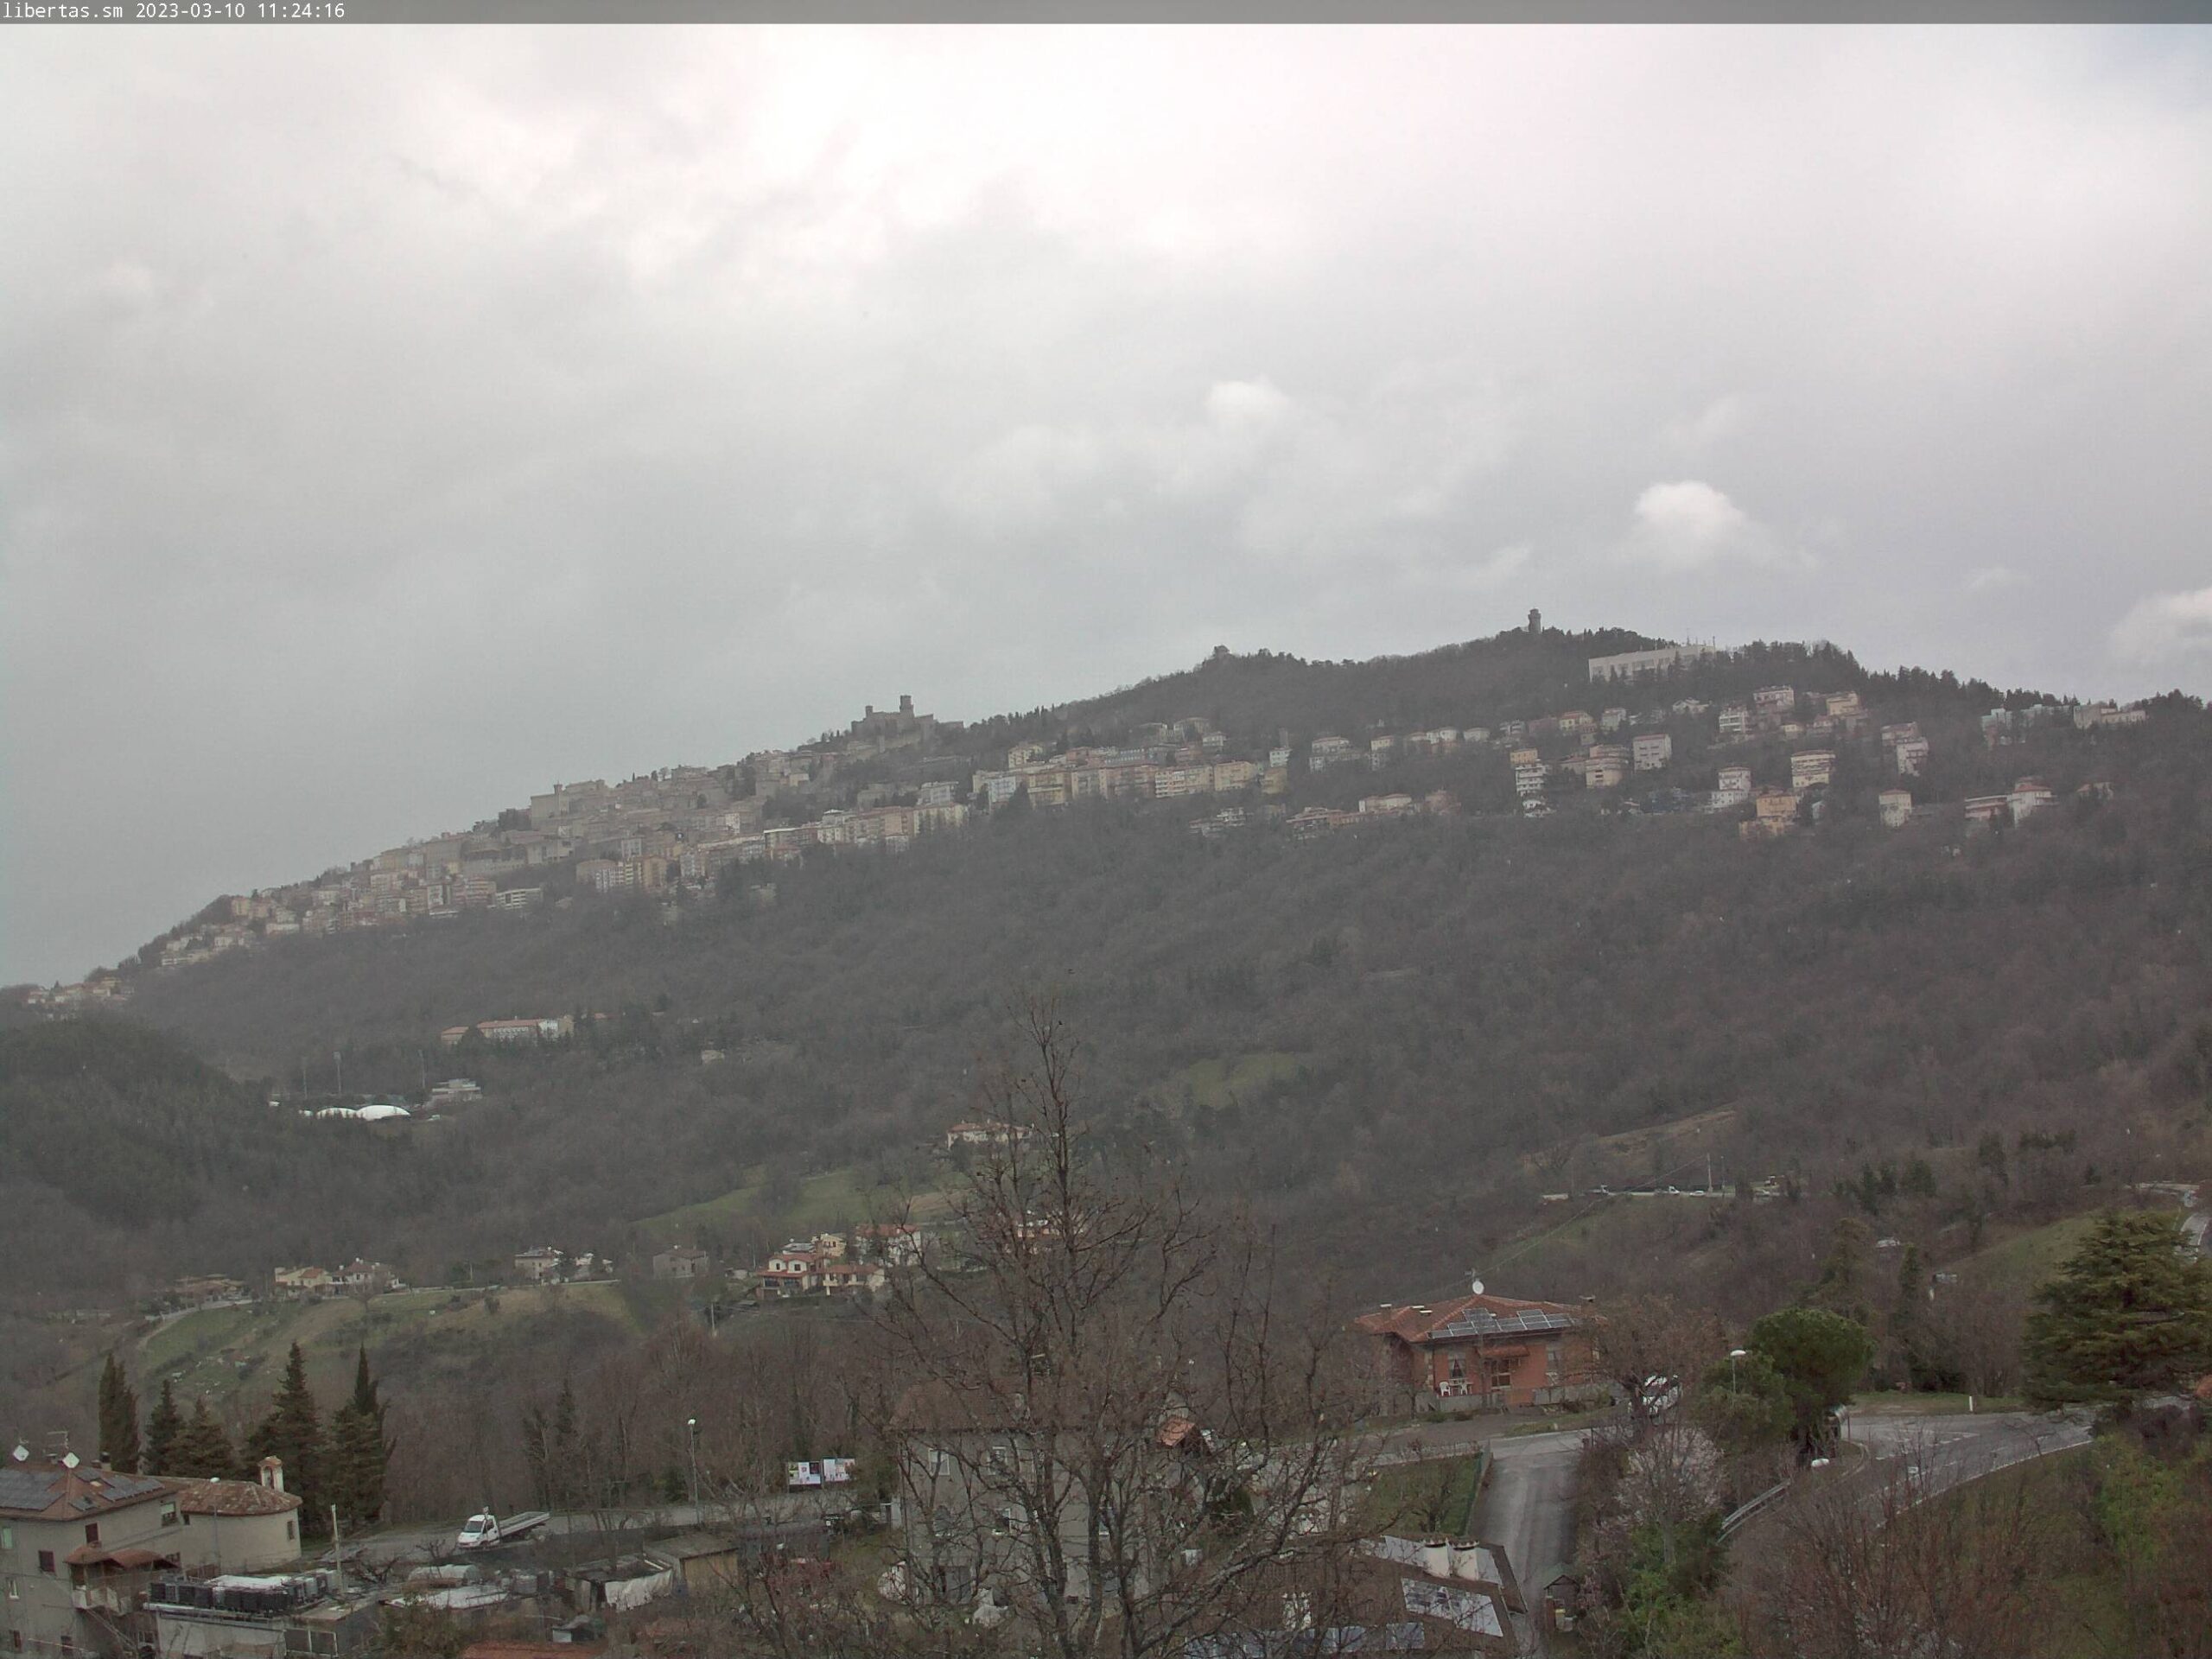 San Marino. Meteo: weekend tra sole e qualche nuvola, temperatura mite, domenica leggero calo termico.